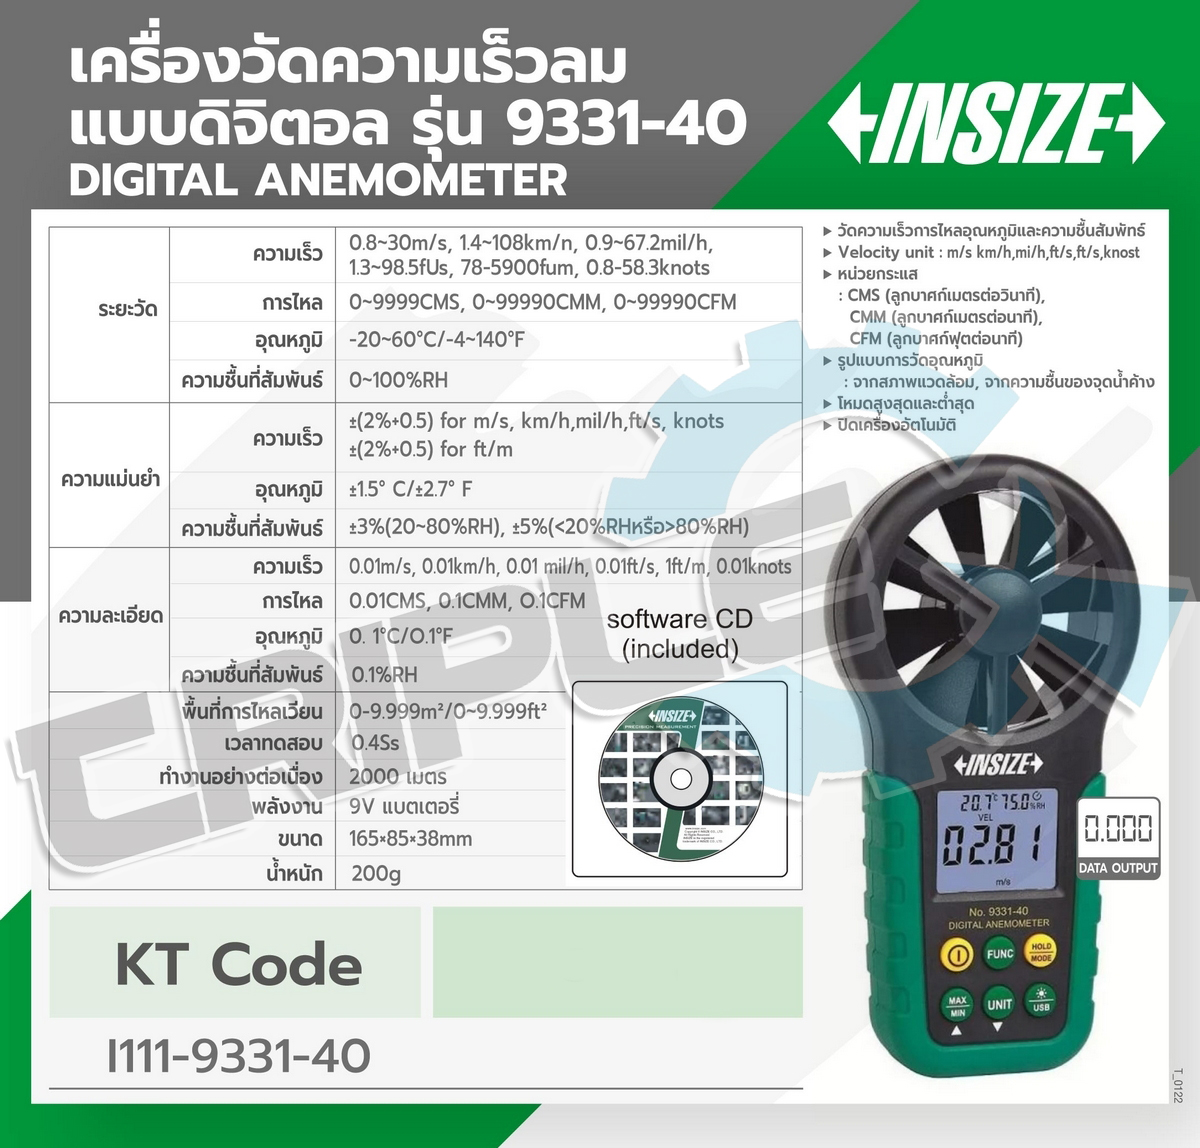 INSIZE - เครื่องวัดความเร็วลมปริมาณอากาศแบบดิจิตอล รุ่น 9331-40 ใช้สำหรับวัดความเร็วการไหลอุณหภูมิและความชื้นสัมพัทธ์